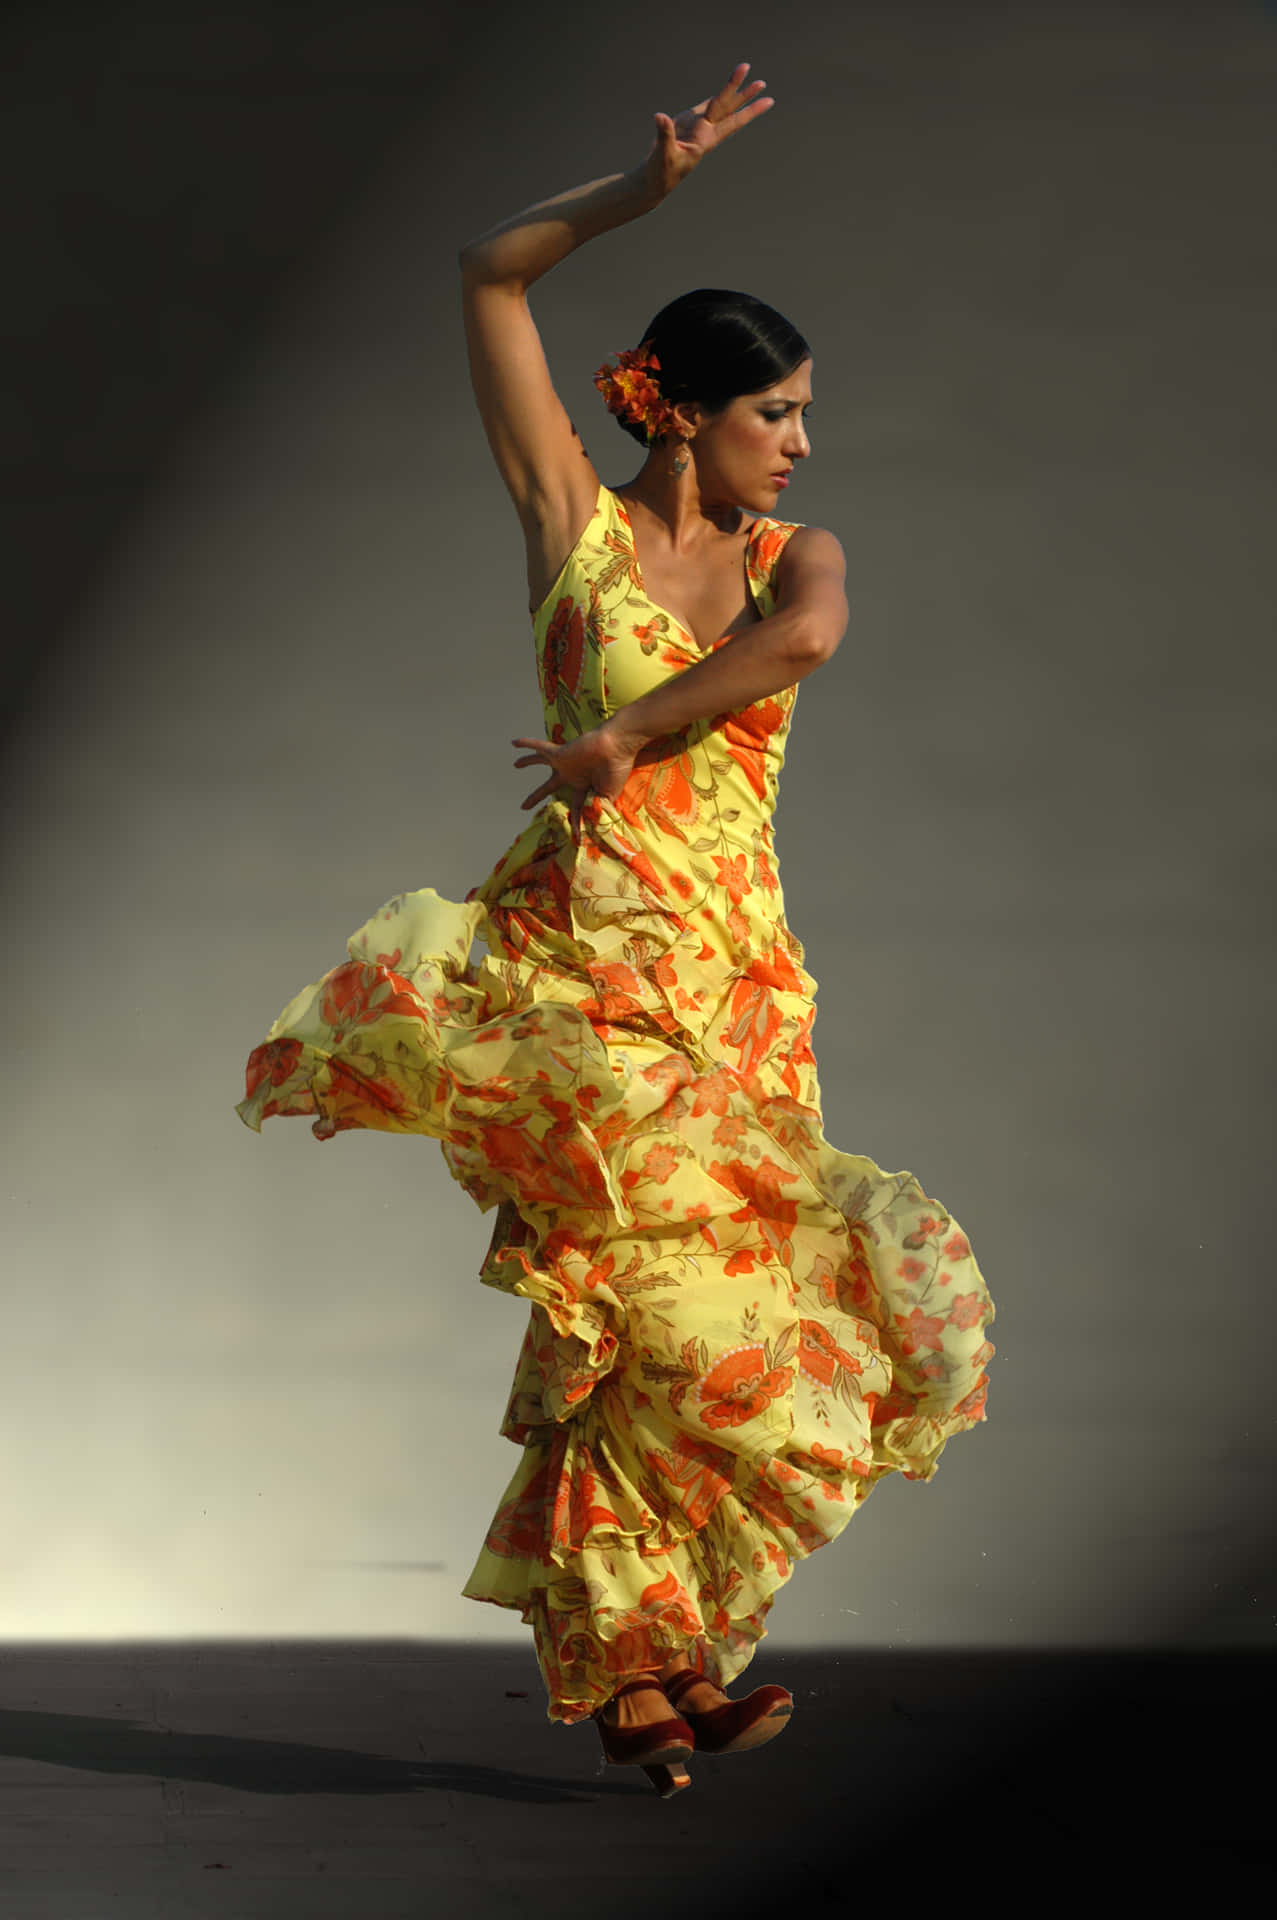 Immaginedi Una Ballerina Che Danza Il Flamenco Spagnolo.